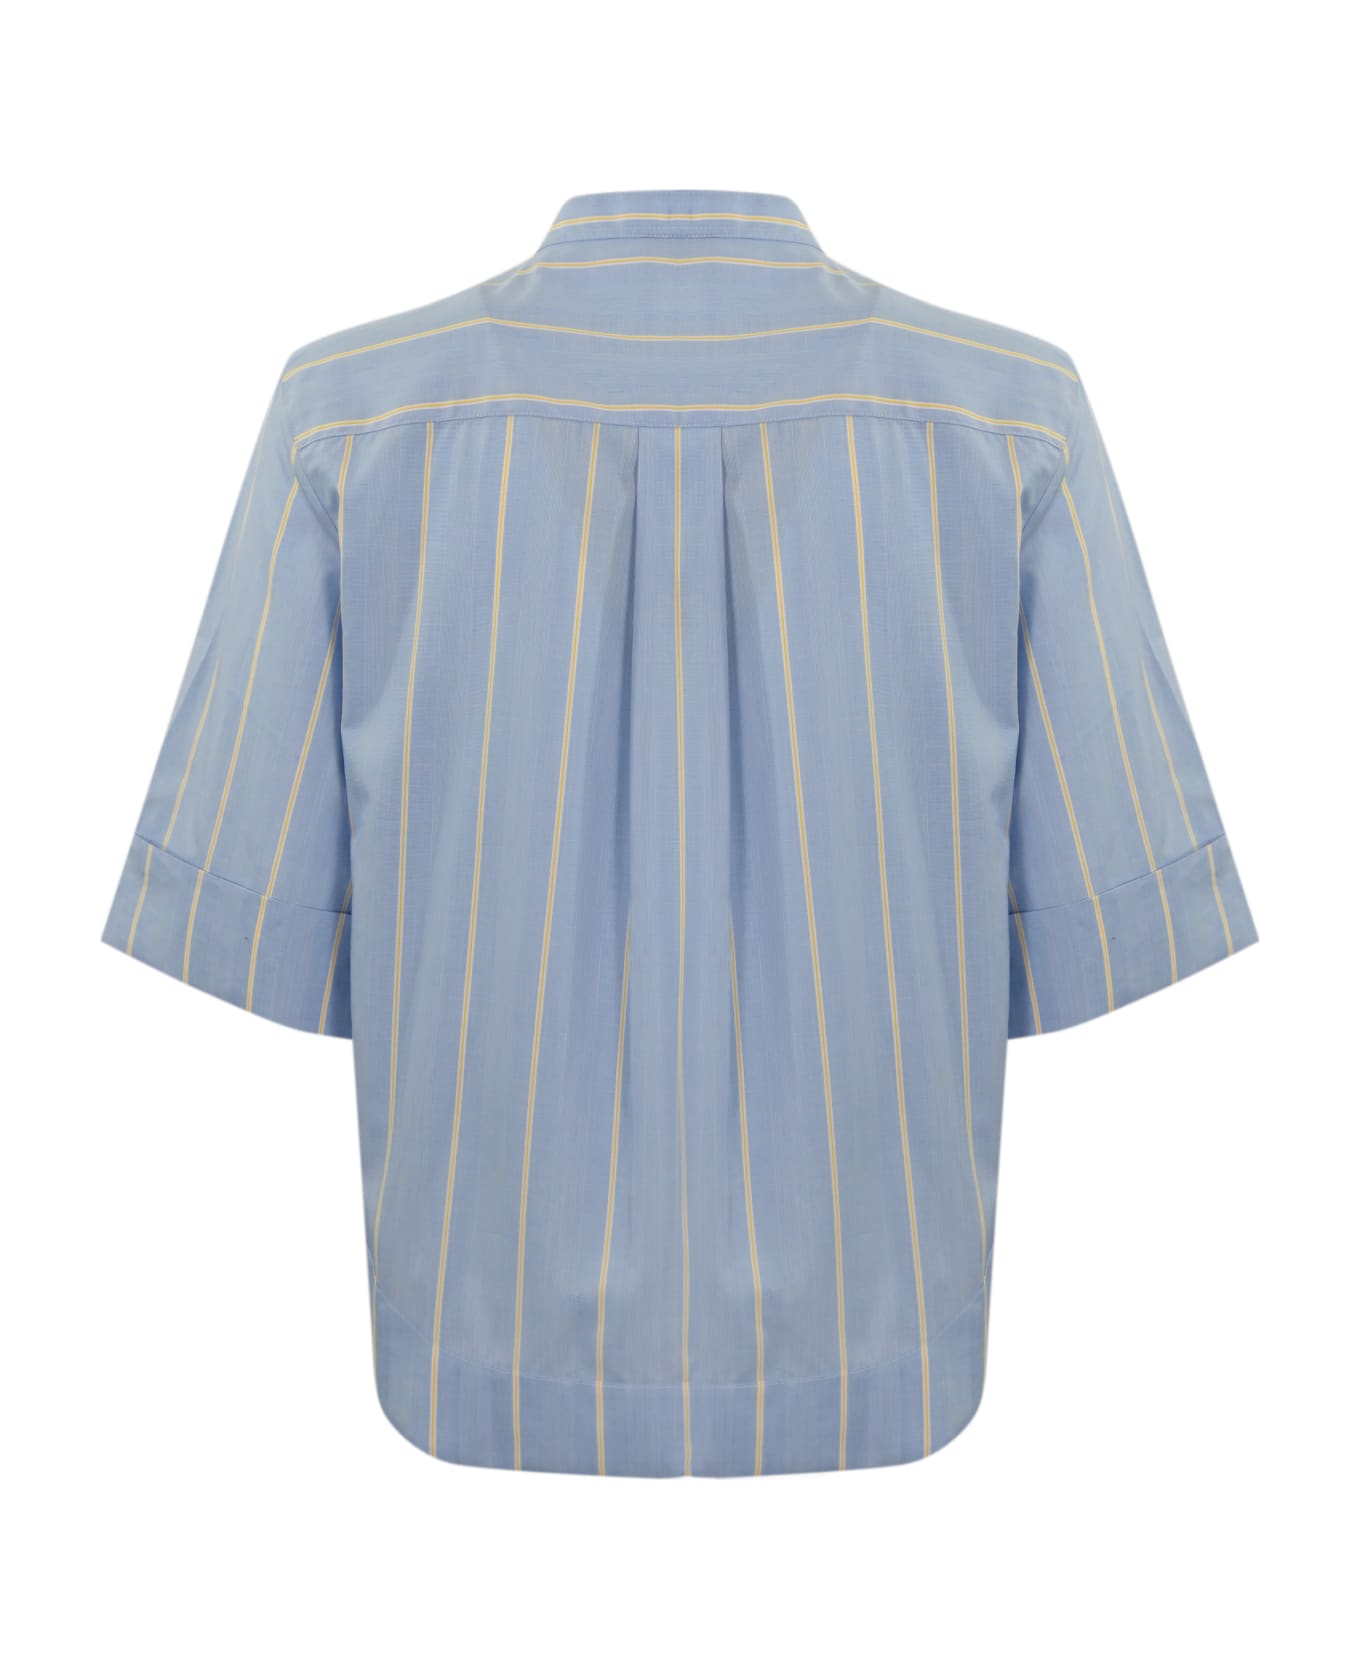 Fay Poepelin Shirt With Mandarin Collar - (azzurro)+(miele)